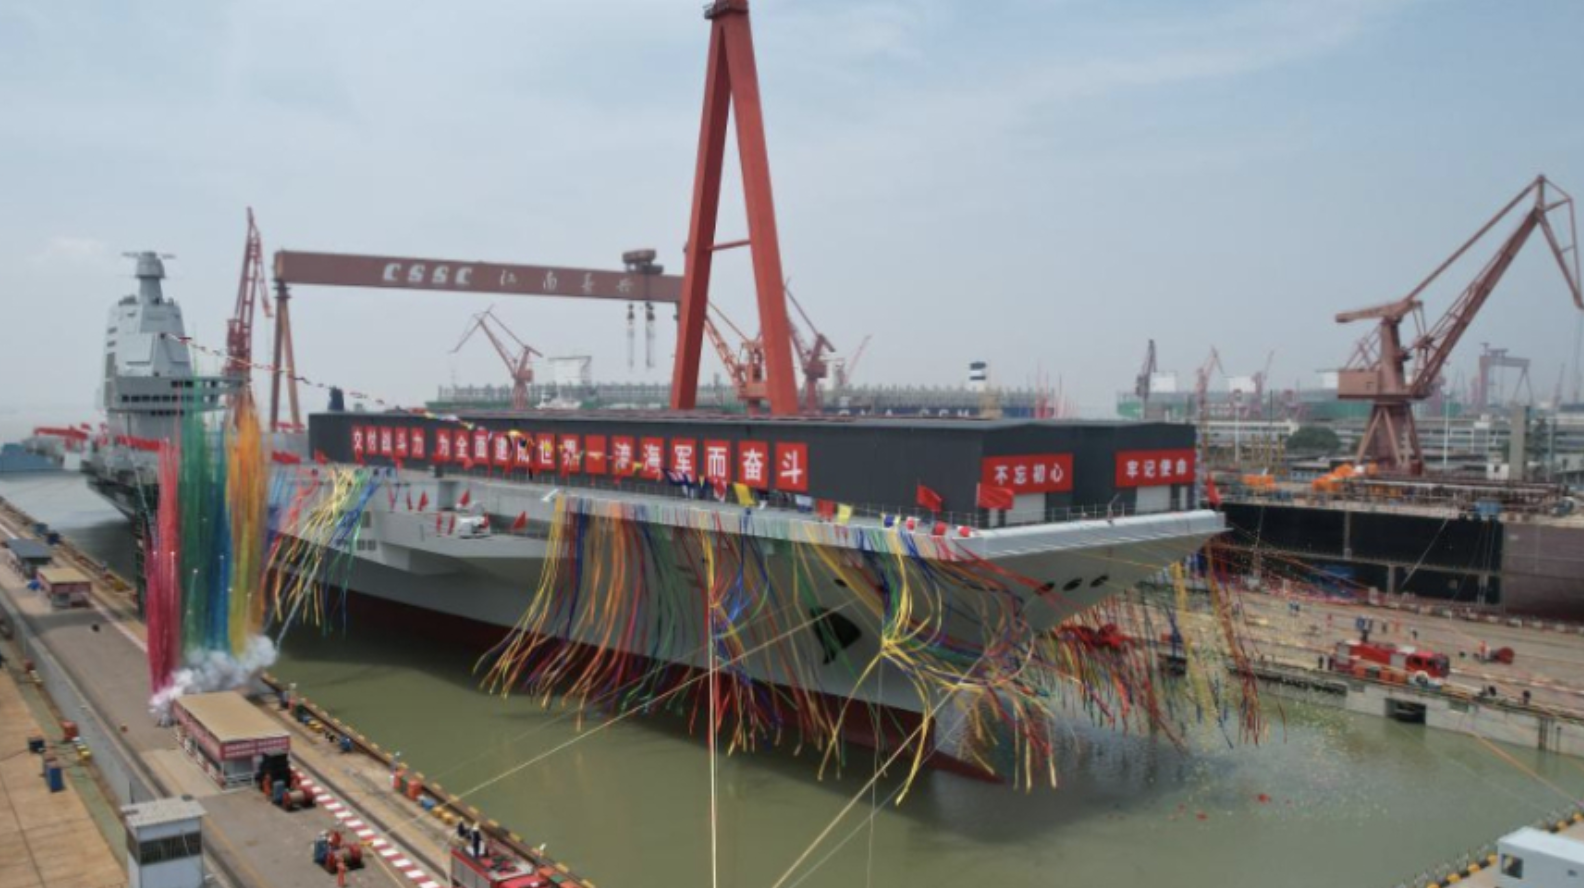 Le presentamos el Fujian: el mayor portaaviones de China